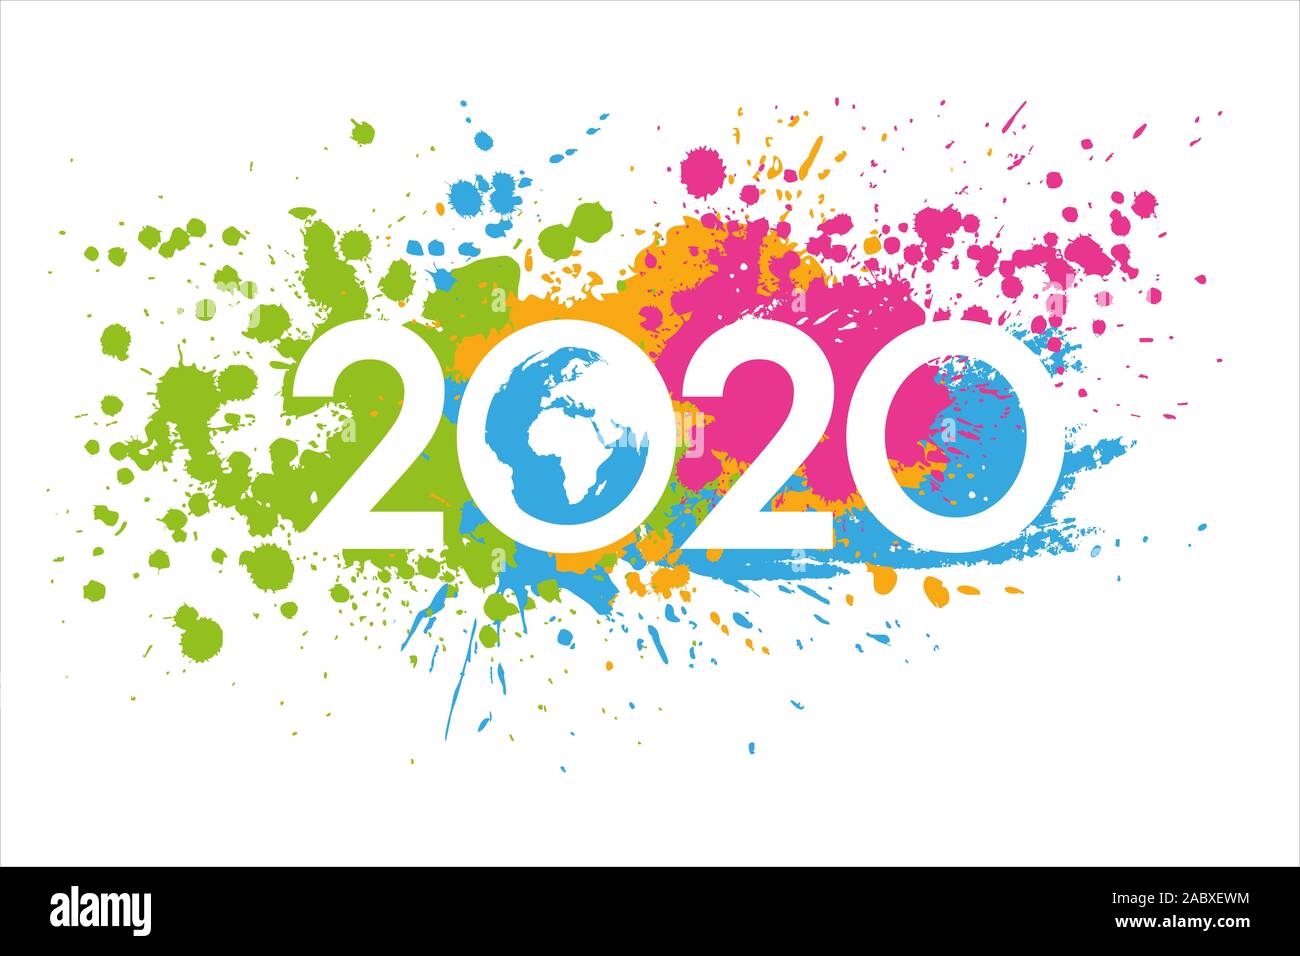 Año nuevo 2020 pintado con manchas coloridas, mapa del mundo interior. Tarjeta de felicitación material para el medio ambiente. Foto de stock